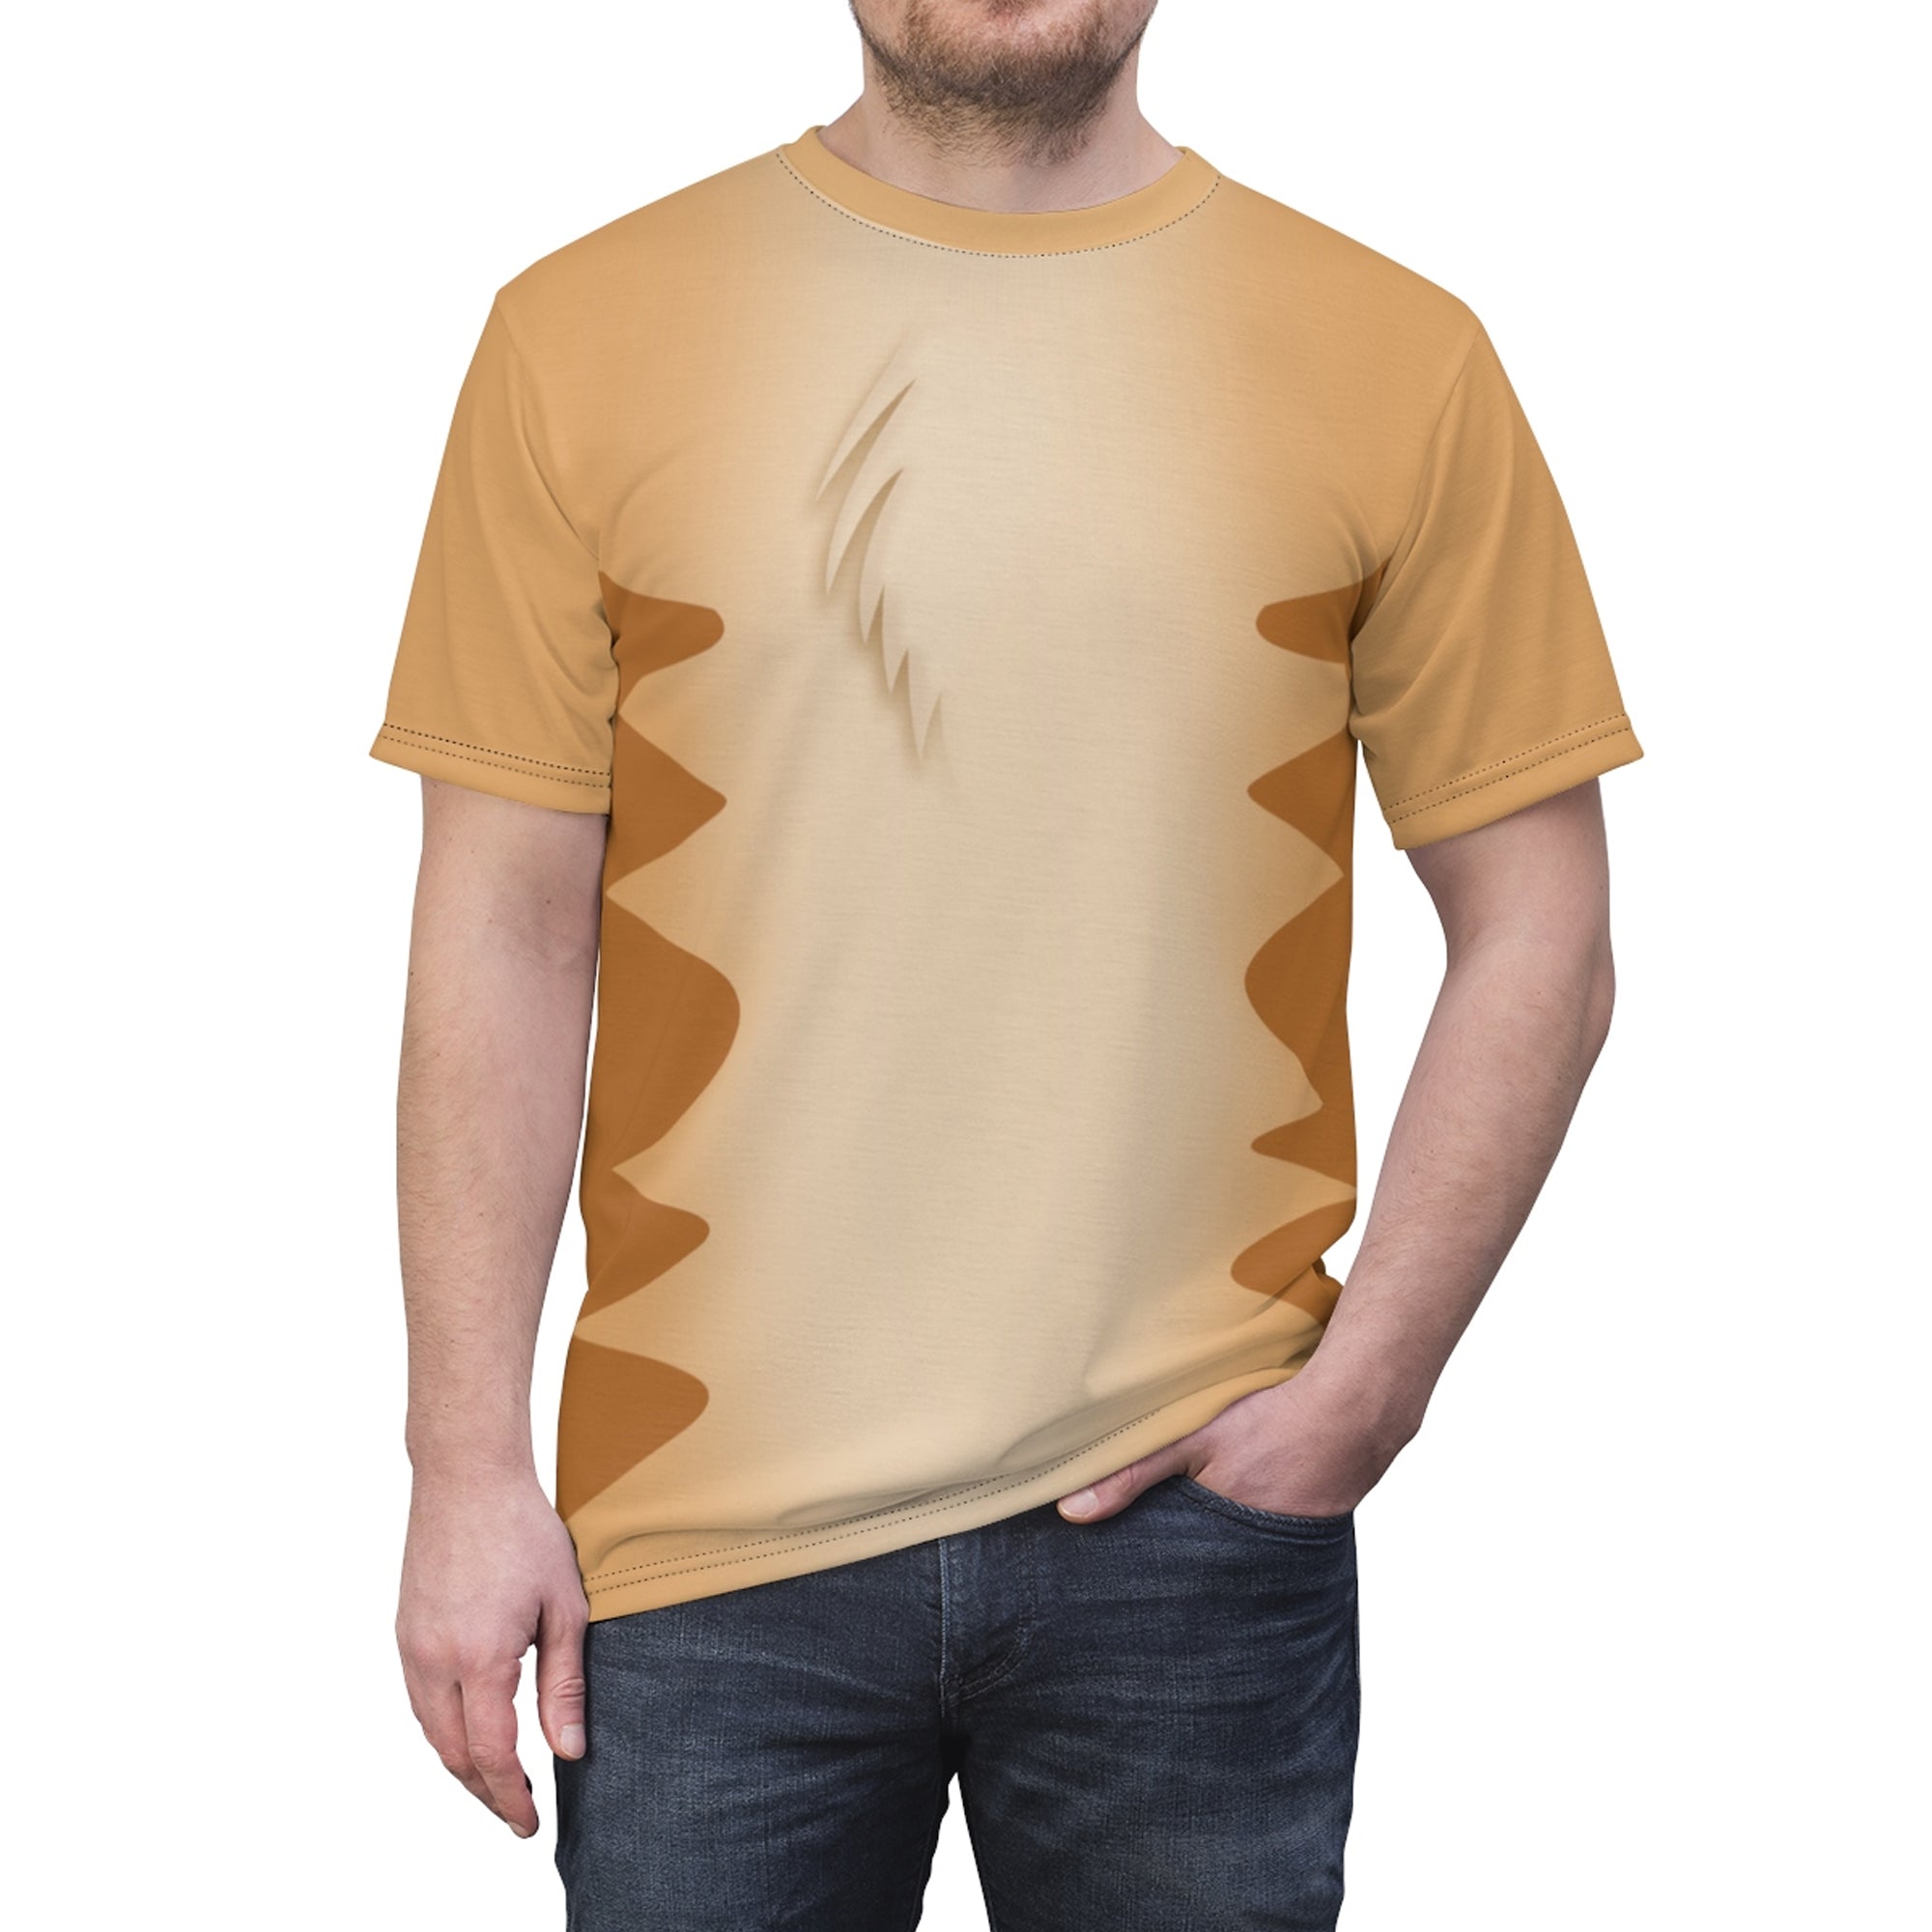 Timon Lion King Costume T-Shirt For Men